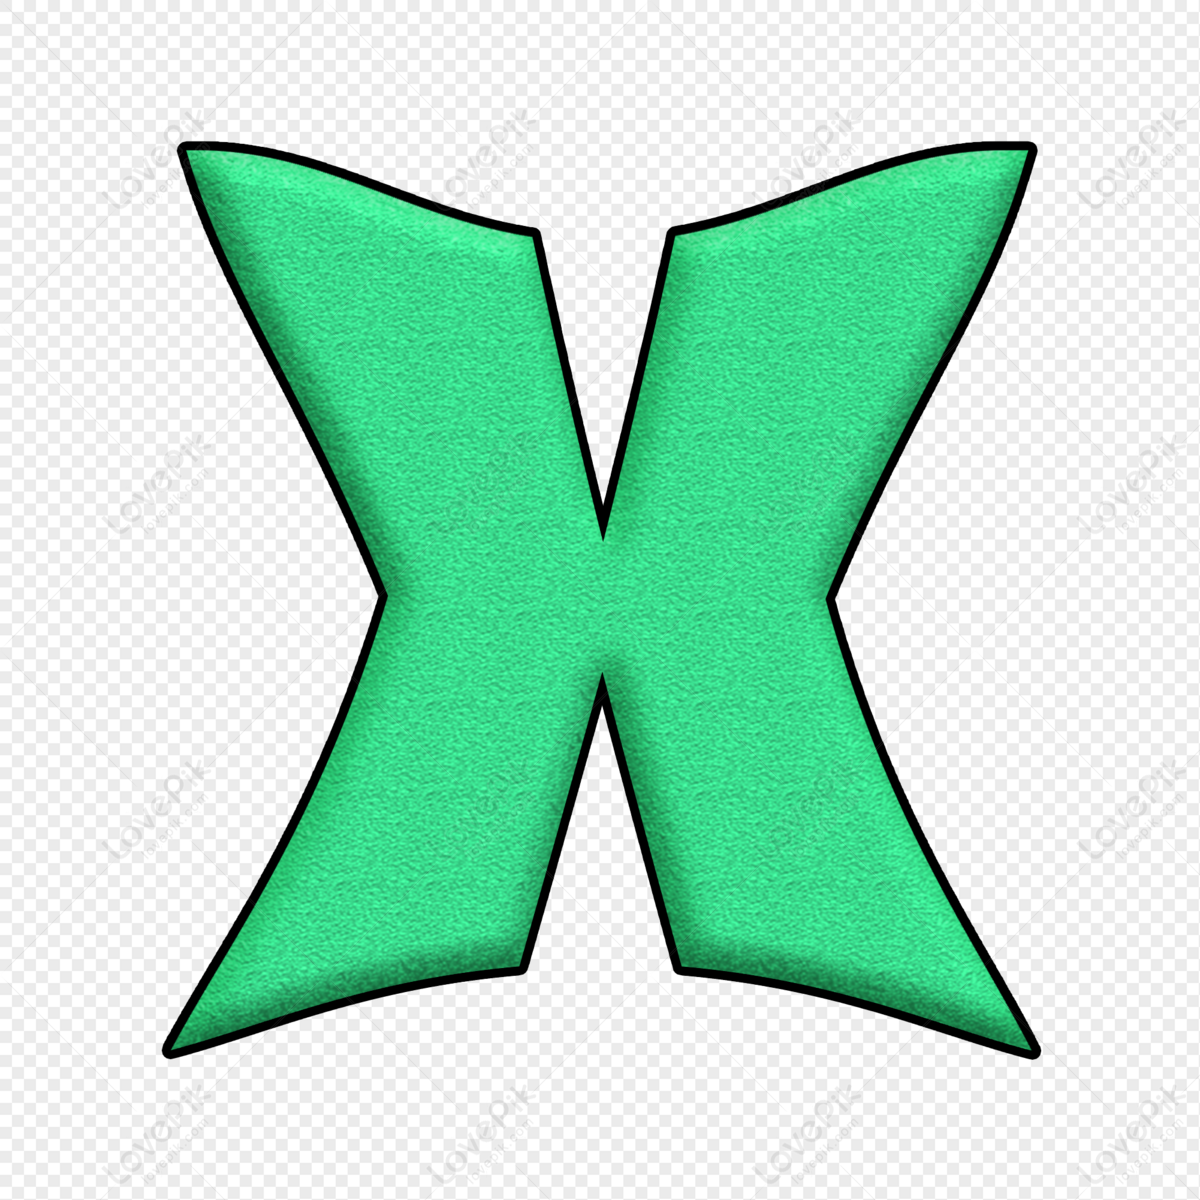 Letter X, Art Letter, Green Letter, Material PNG Transparent Image